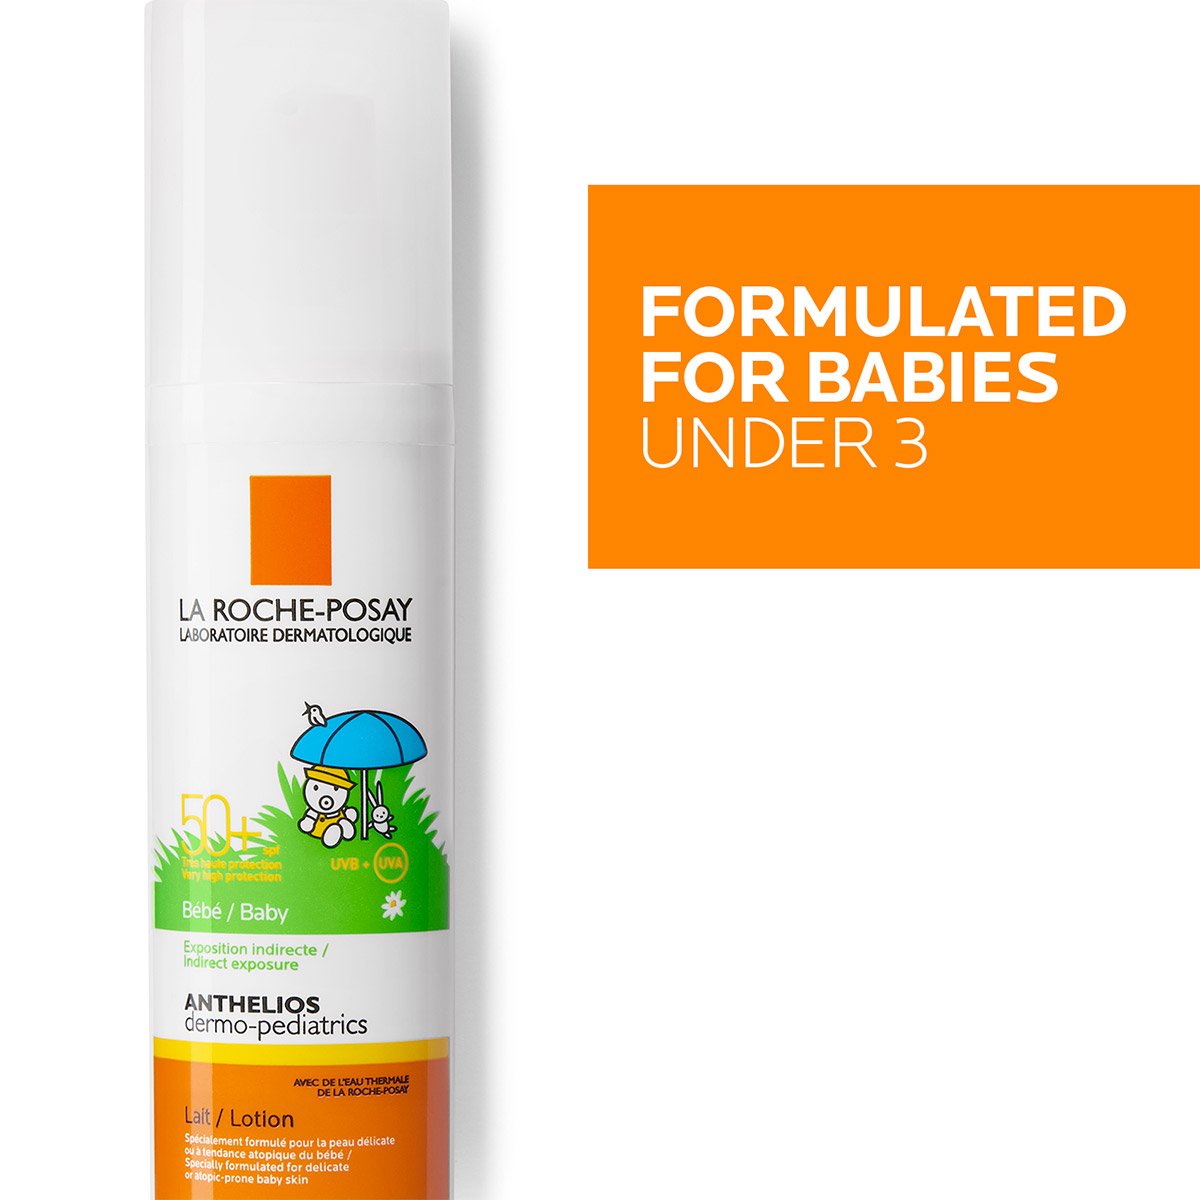 Confezione Anthelios dermo-pediatrics lozione SPF50+ con scritta bianca su sfondo arancione: Formulated For Babies Under 3